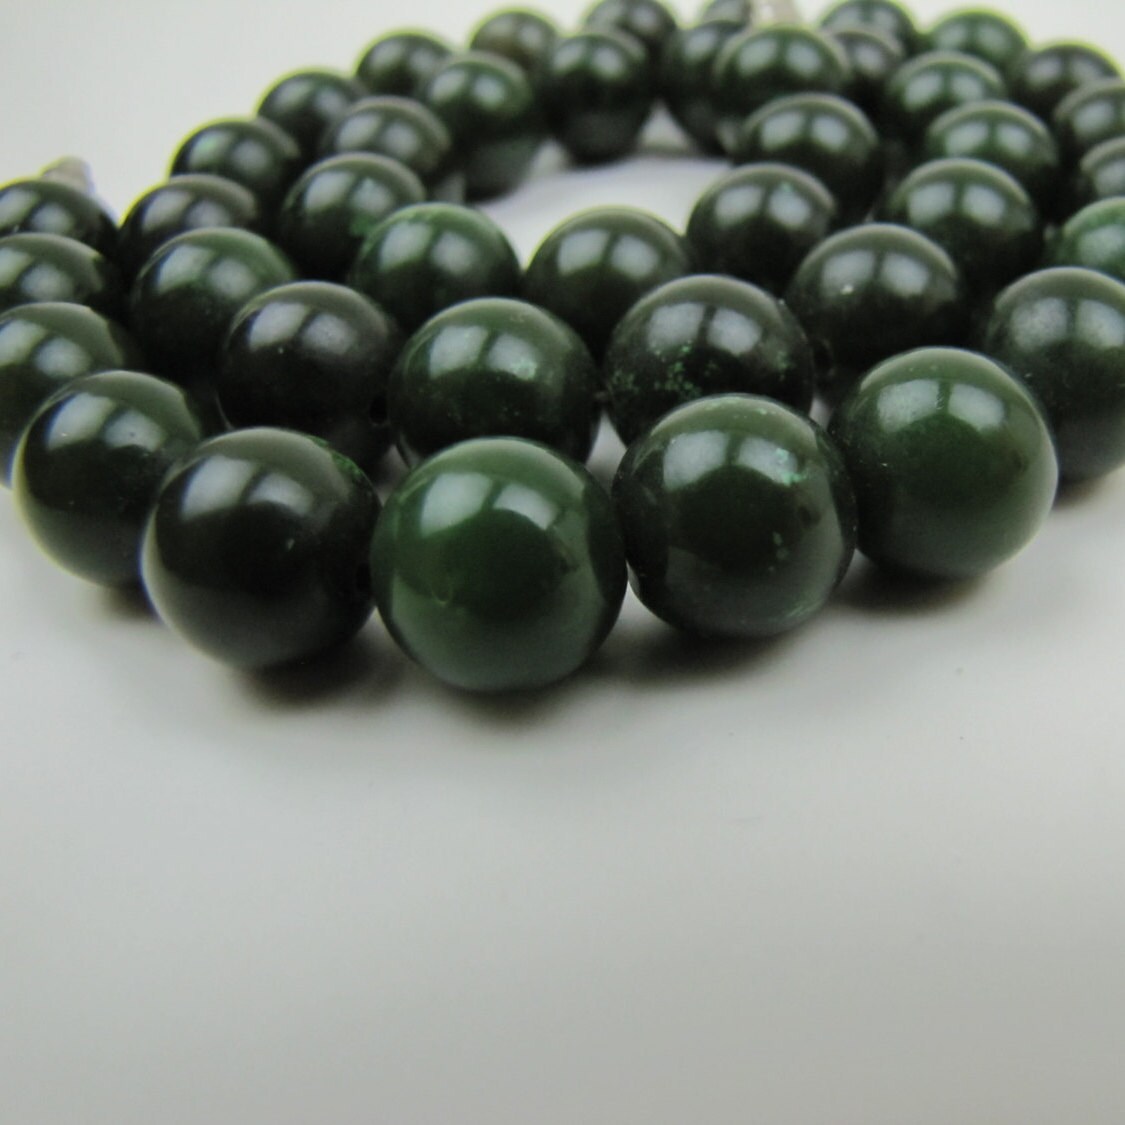 Nephrite Jade Bead Necklace. Spinach Green Jadeite. 10 mm